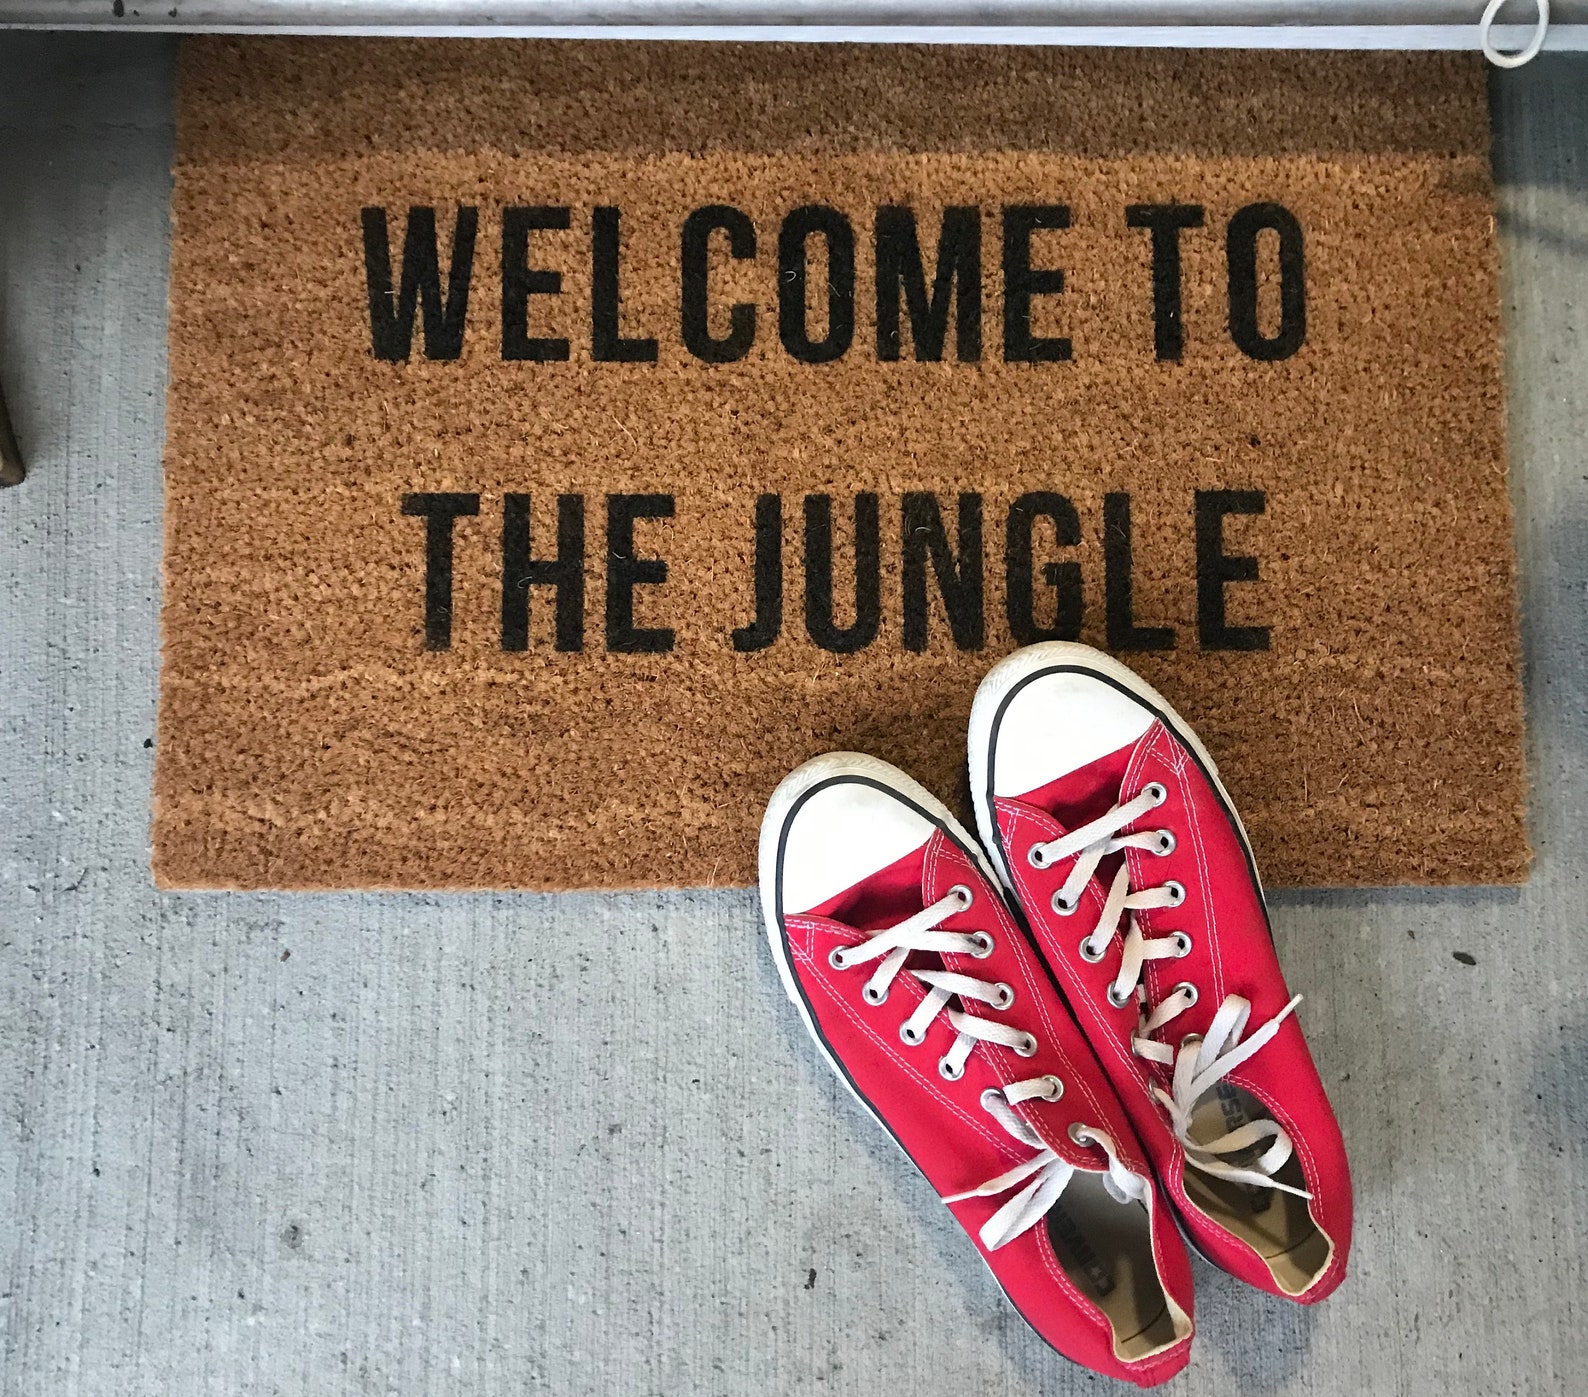 Велком ту джангл. Welcome to the Jungle. Stereotype Welcome to my Jungle. Бабочка под ней надпись Welcome to the Jungle.